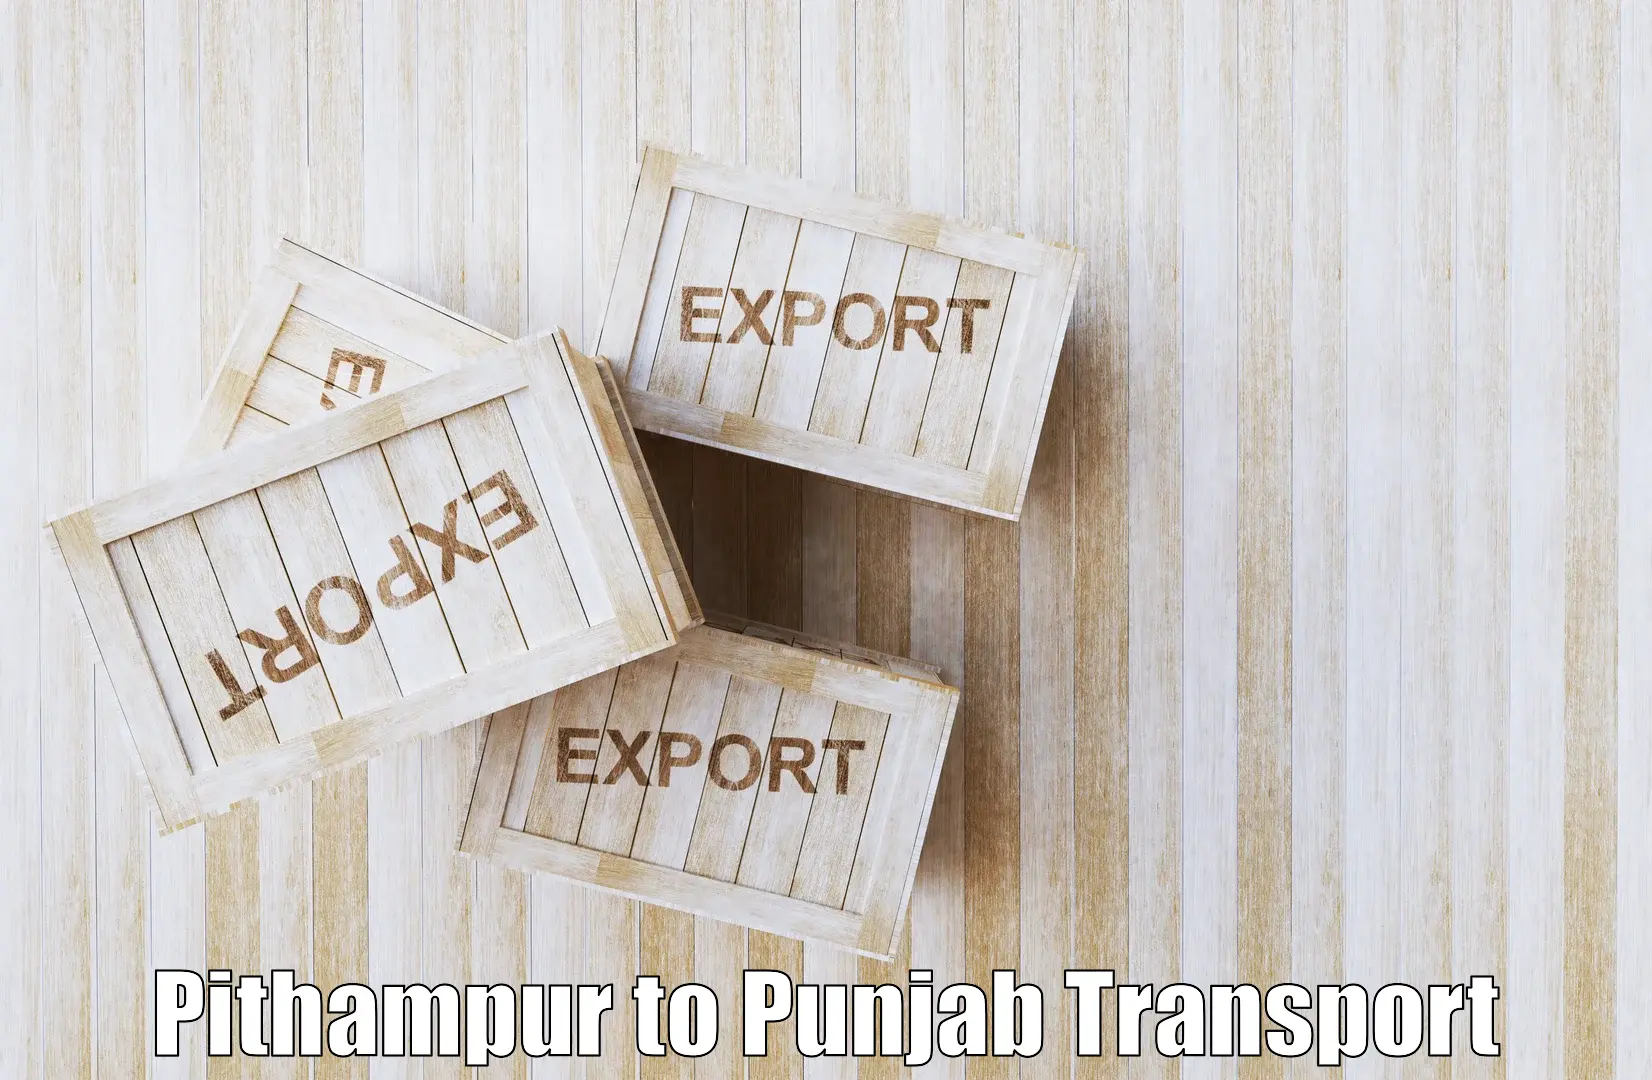 Furniture transport service Pithampur to Nawanshahr